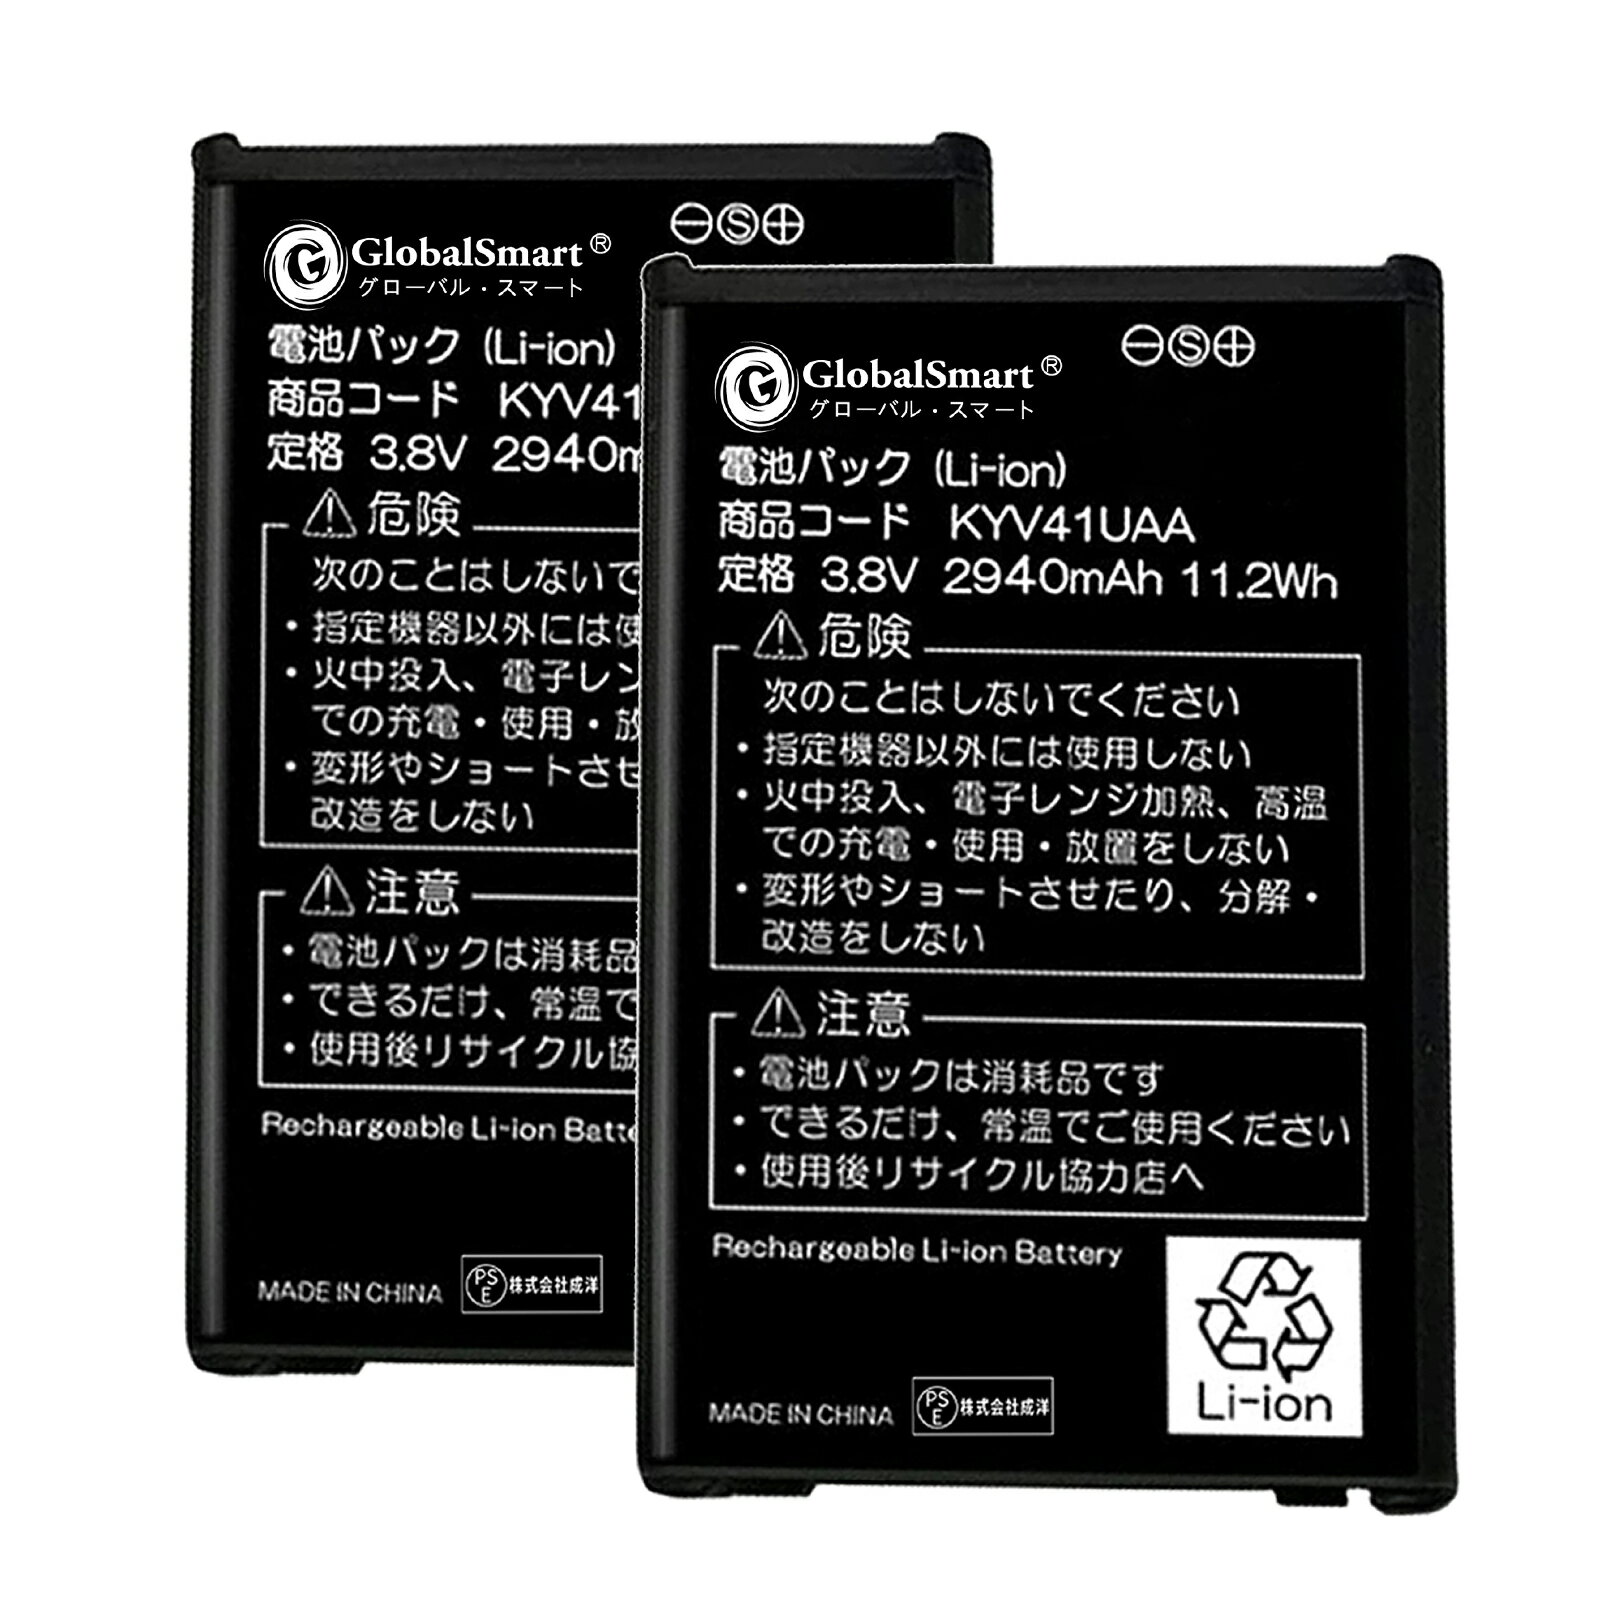 【2個セット】Globalsmart 新品 京セラ KYV41 互換 バッテリー【2940mAh 3.8V】対応用 1年保証 高品質 交換 互換高性能 電池パック